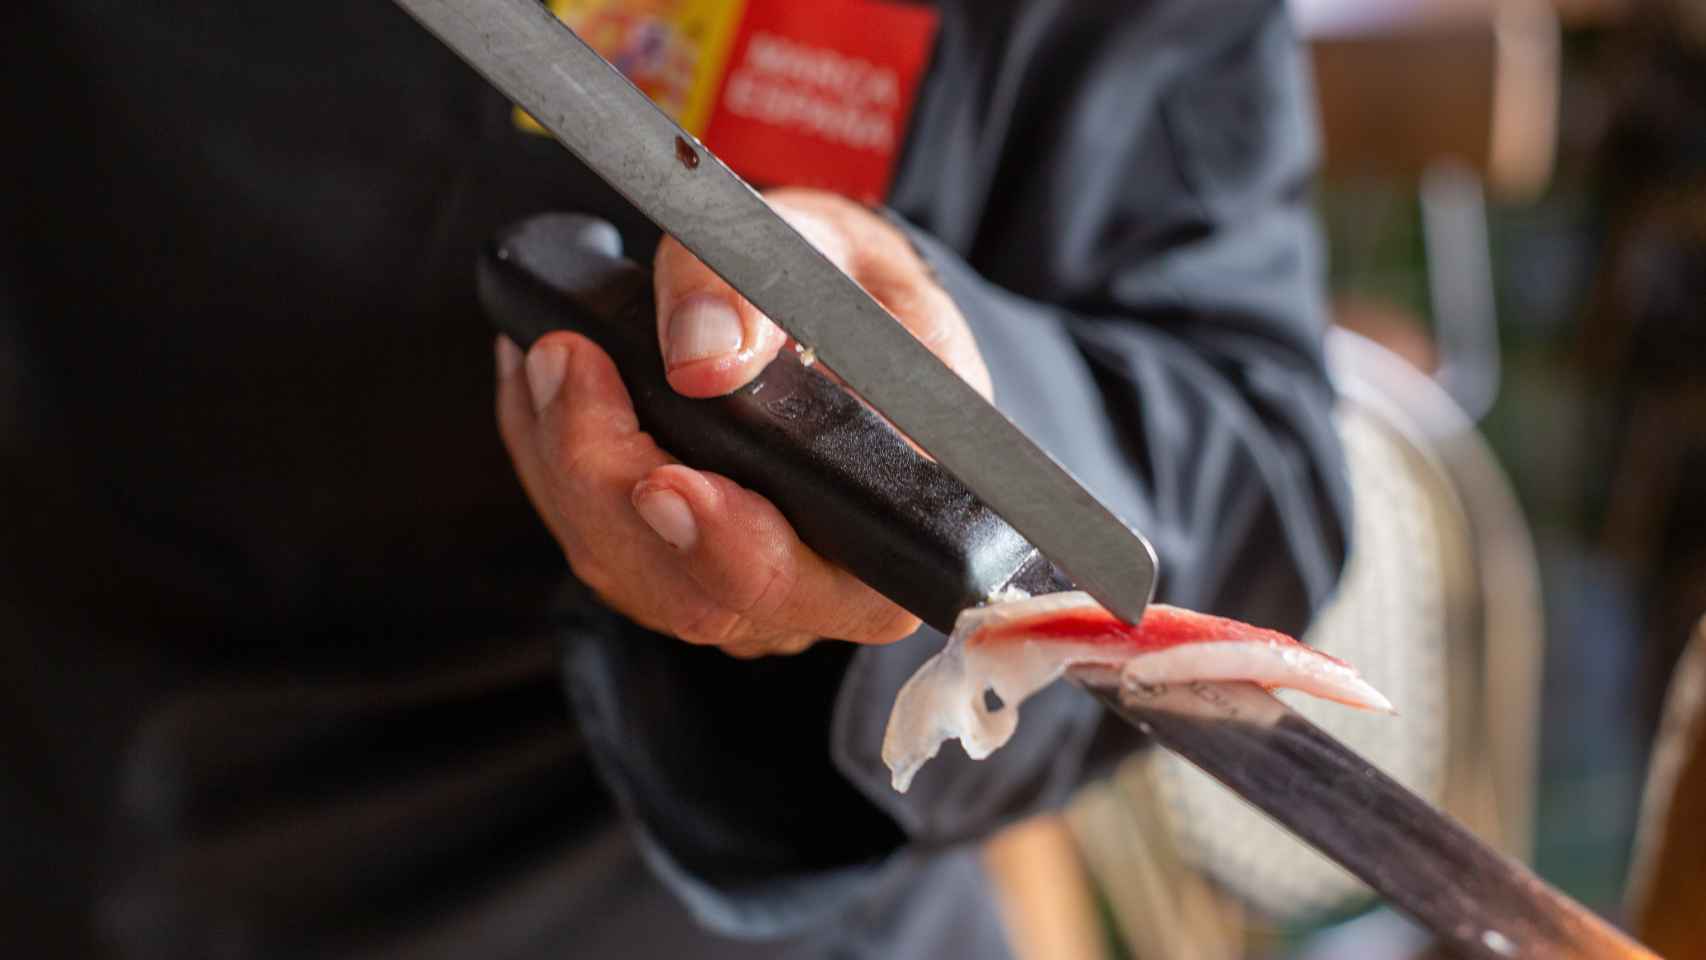 El maestro jamonero desliza una loncha de jamón ibérico por la hoja de su cuchillo.